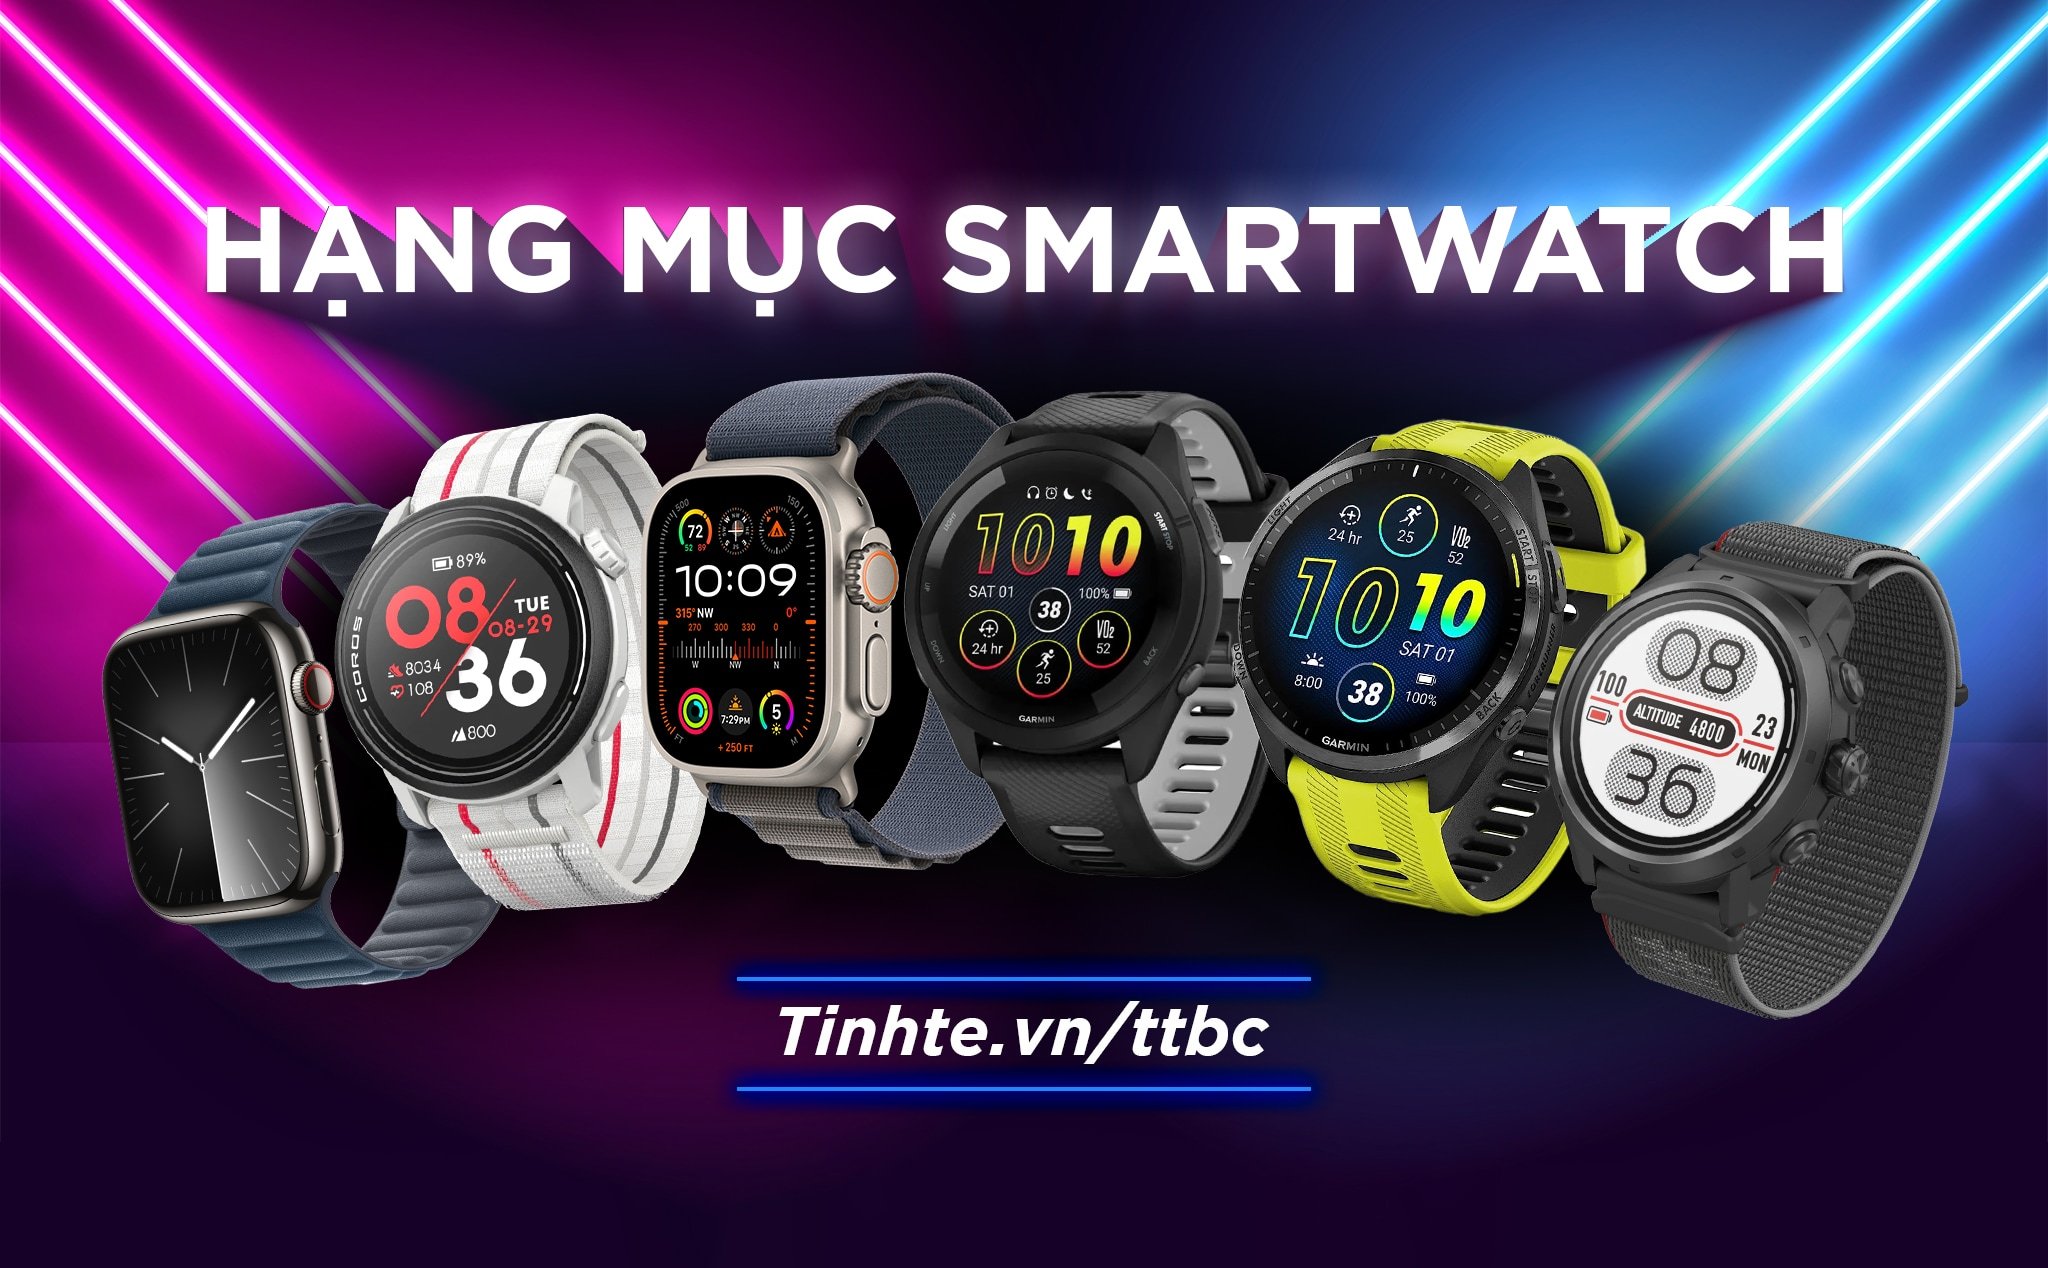 TTBC23: Mời bình chọn hạng mục Smartwatch trúng bộ quà trị giá hơn 54 triệu đồng